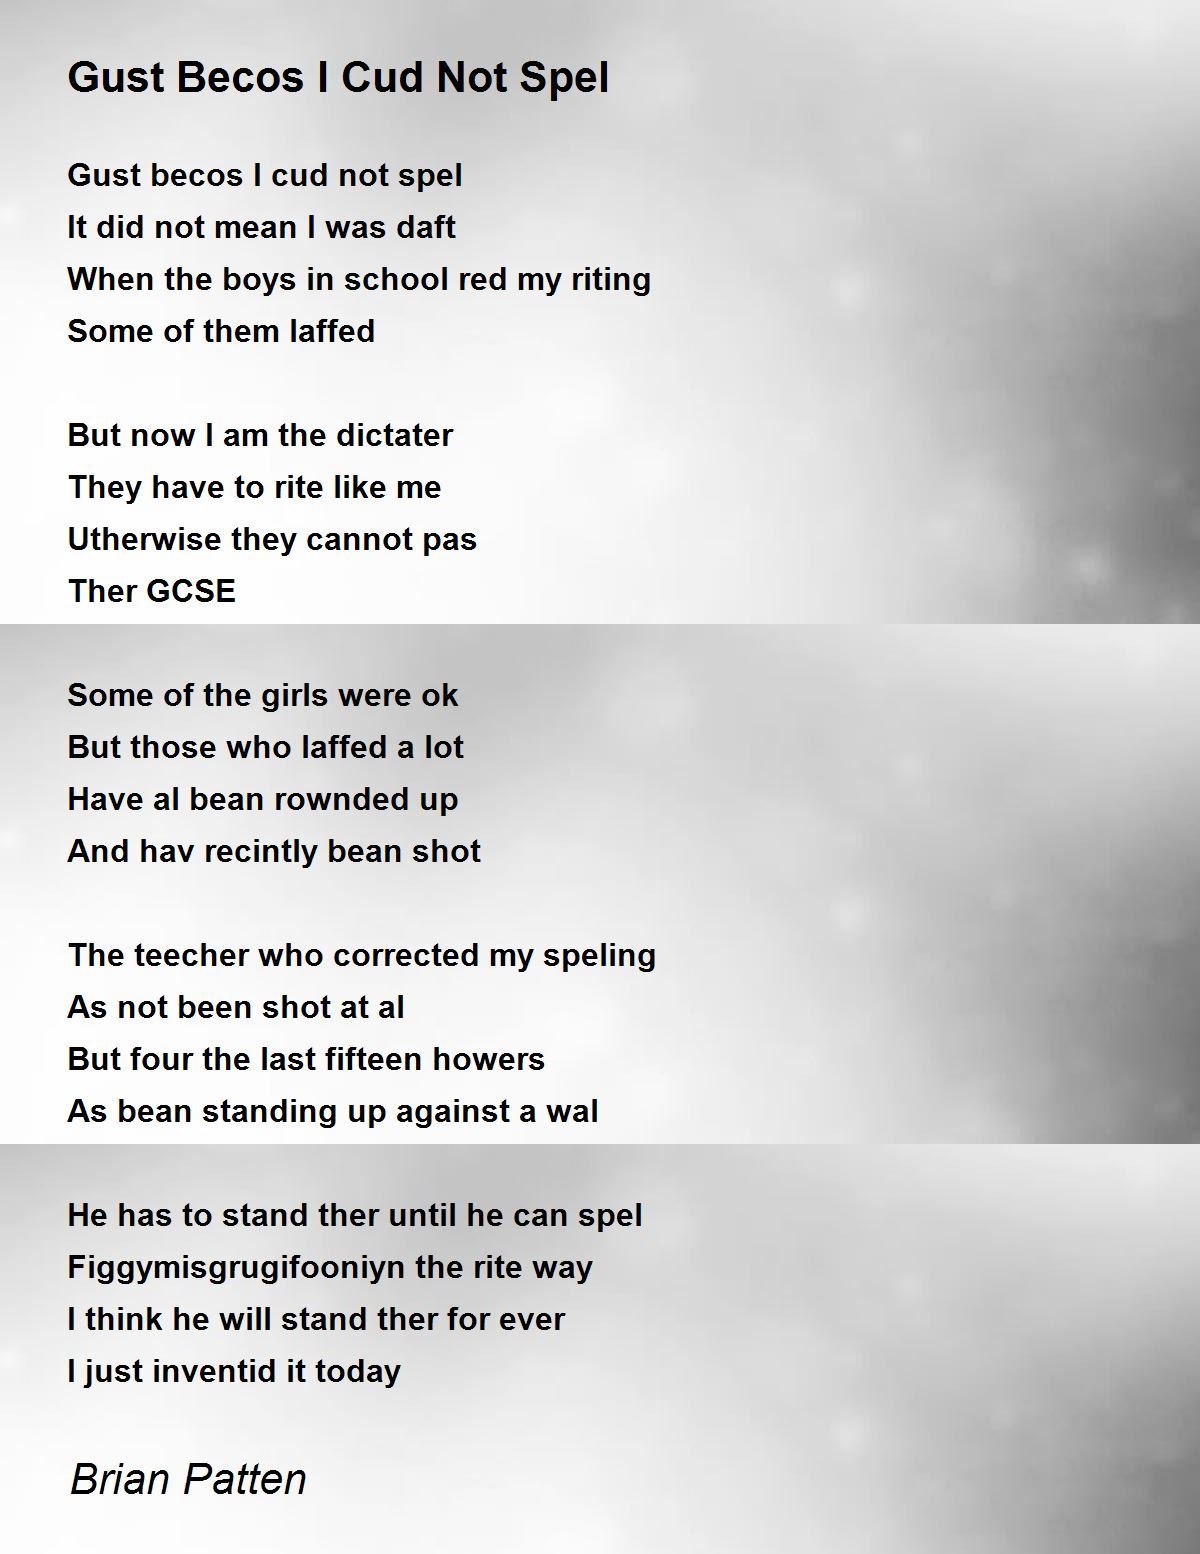 Gust Becos I Cud Not Spel Poem by Brian Patten - Poem Hunter